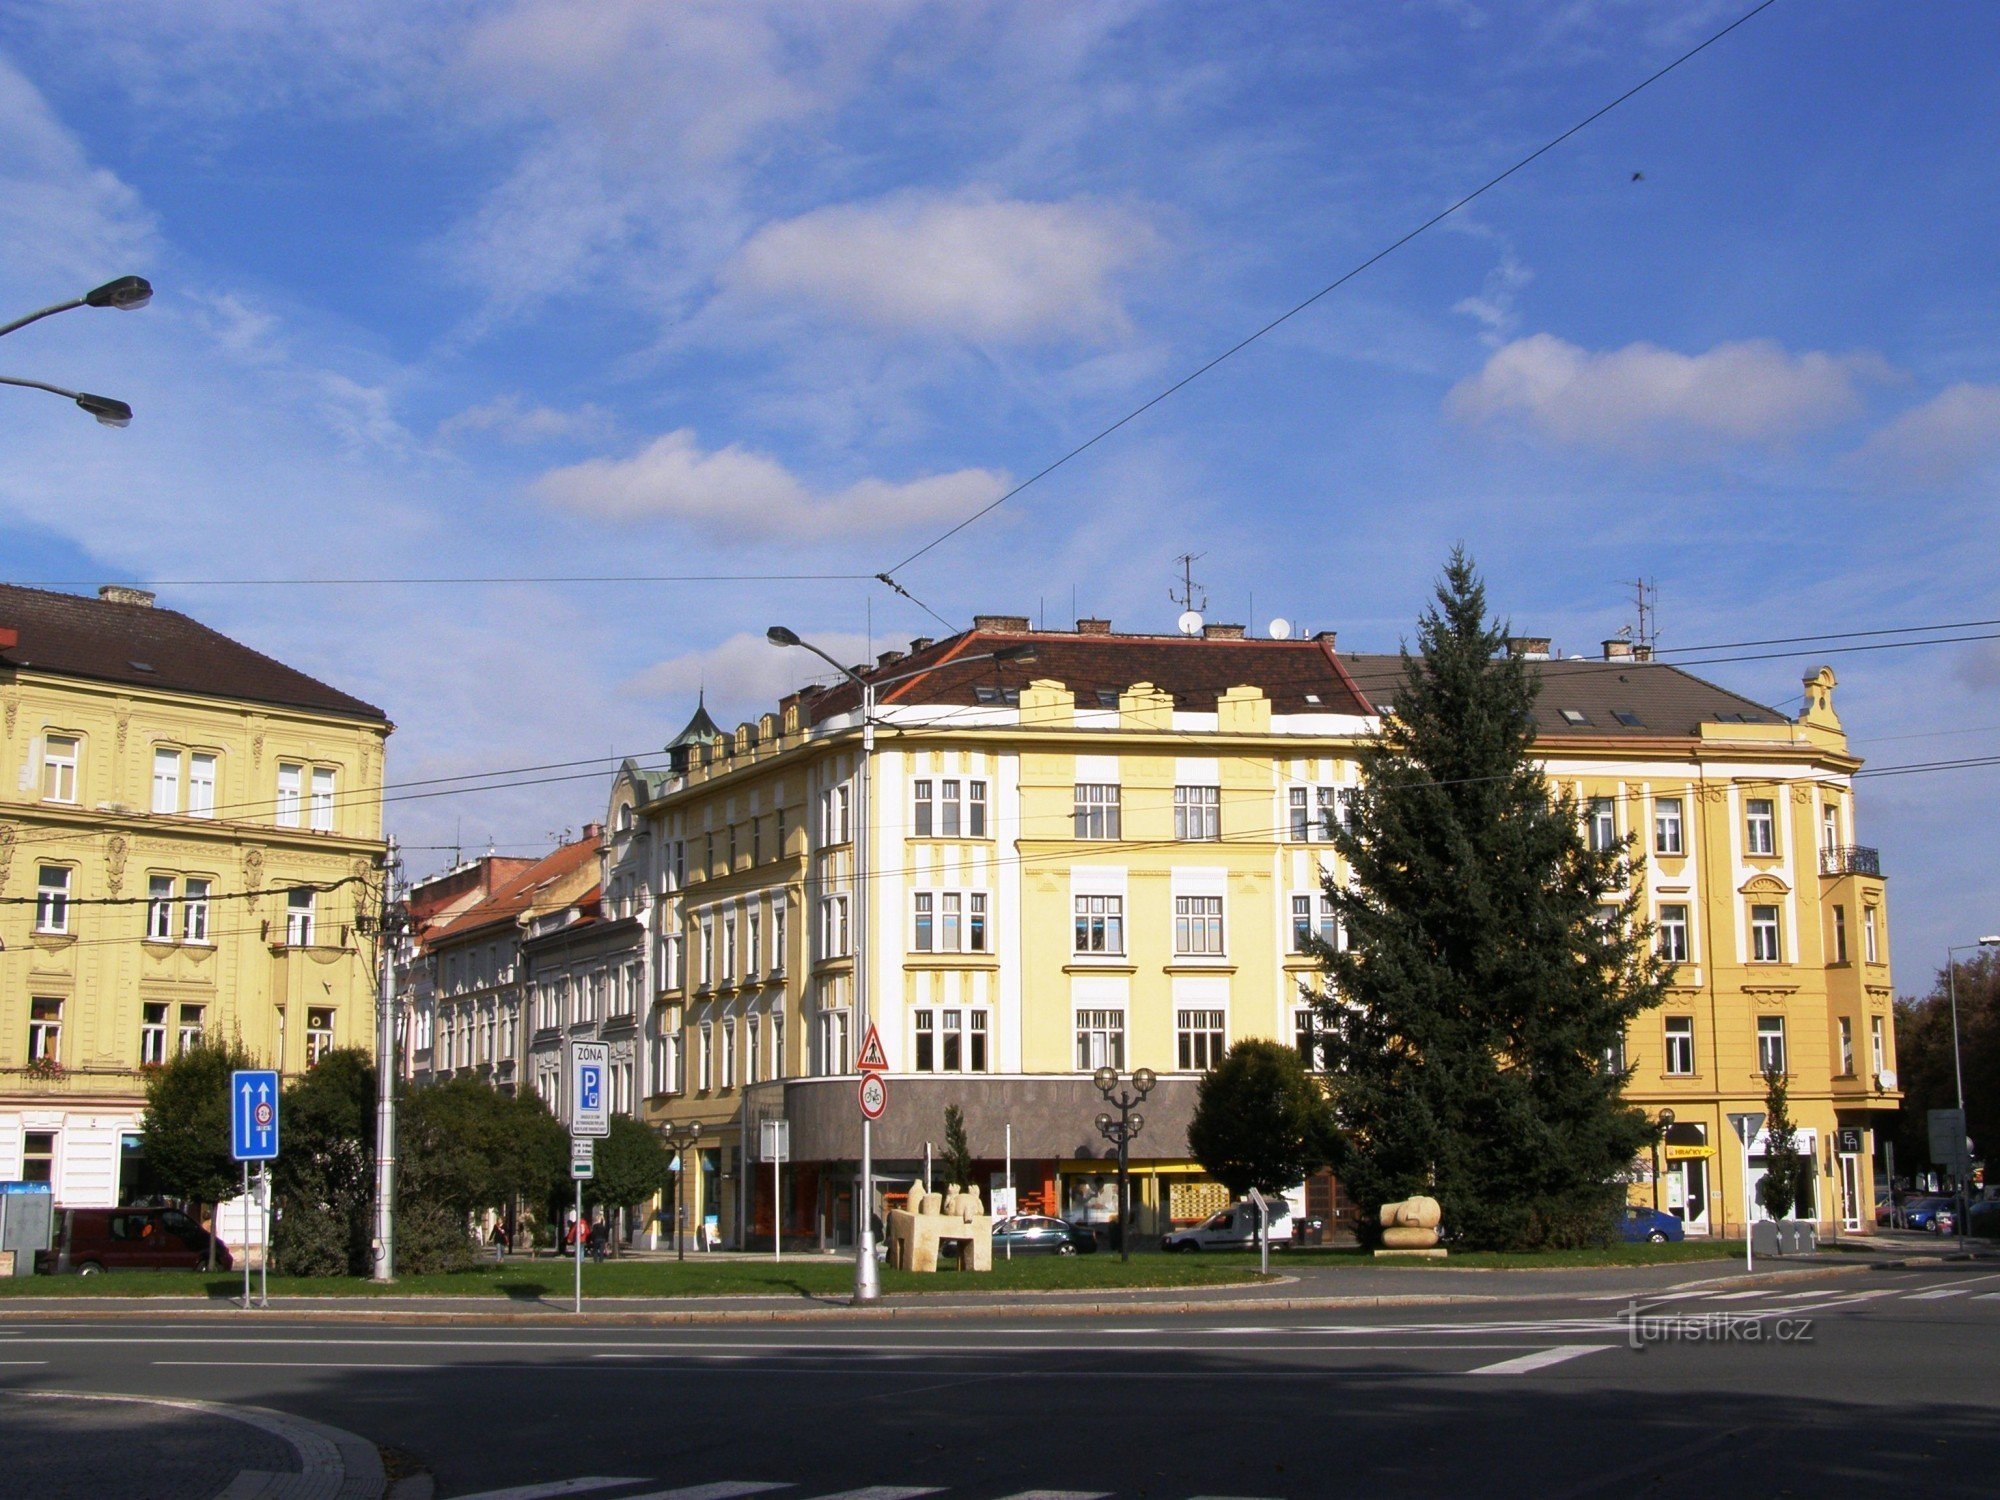 Hradec Králové - Platz der Freiheit